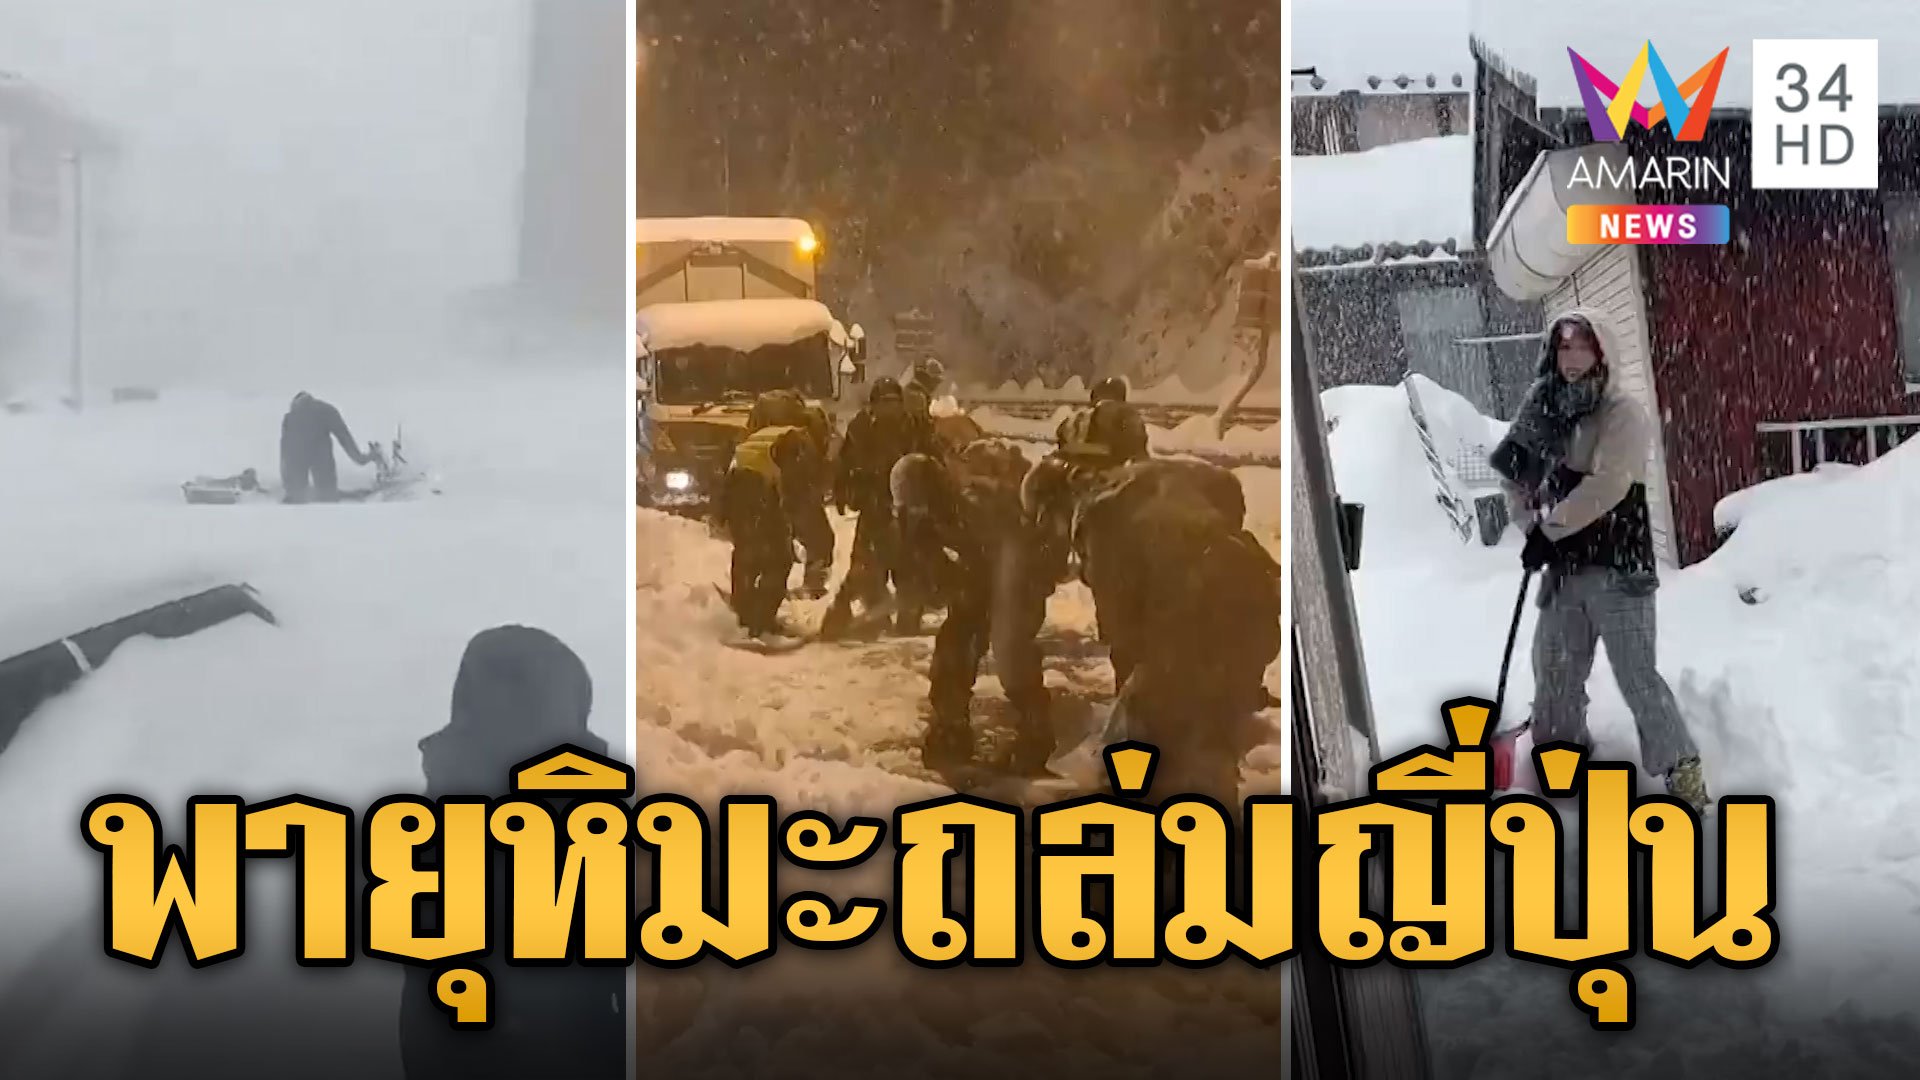 ญี่ปุ่นเตือนอันตราย พายุหิมะถล่มหนัก ทับรถจมมิดคัน | ข่าวอรุณอมรินทร์ | 25 ม.ค. 67 | AMARIN TVHD34